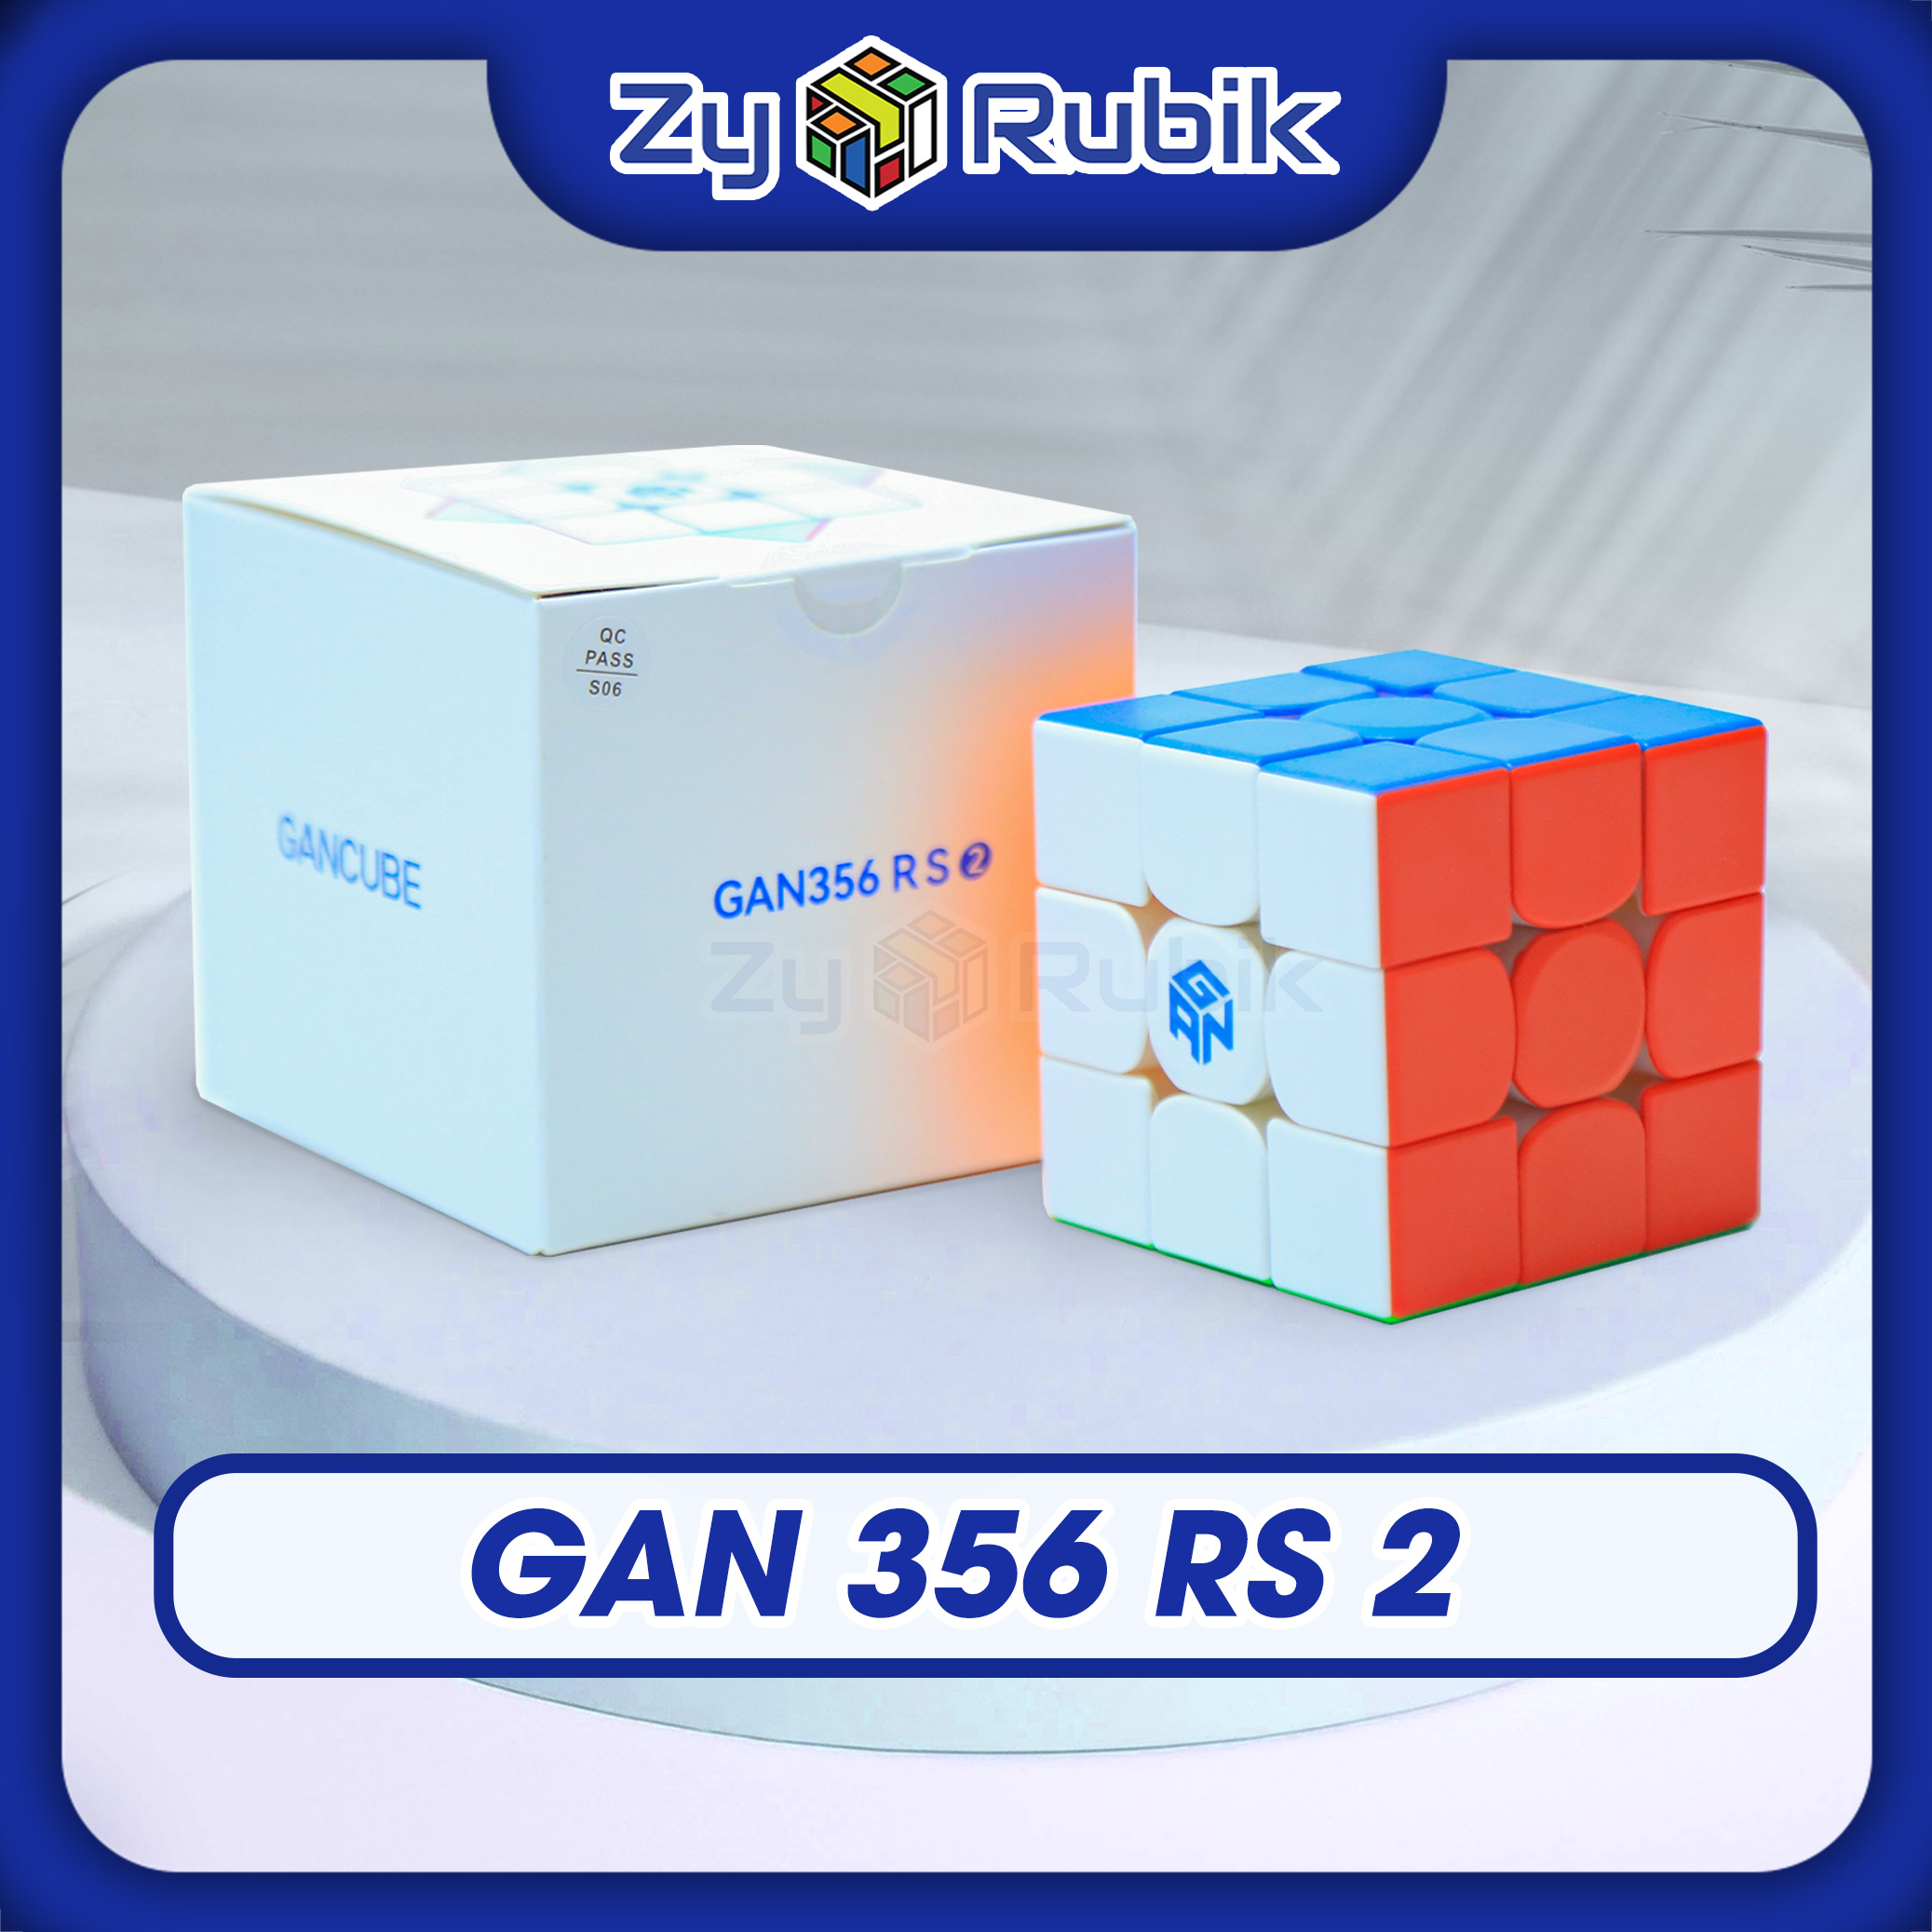 Rubik Gan 356 RS V2 - Gan 356 RS V2 Stickerless - Đồ chơi Phát Triển Trí Tuệ - Zyo Rubik